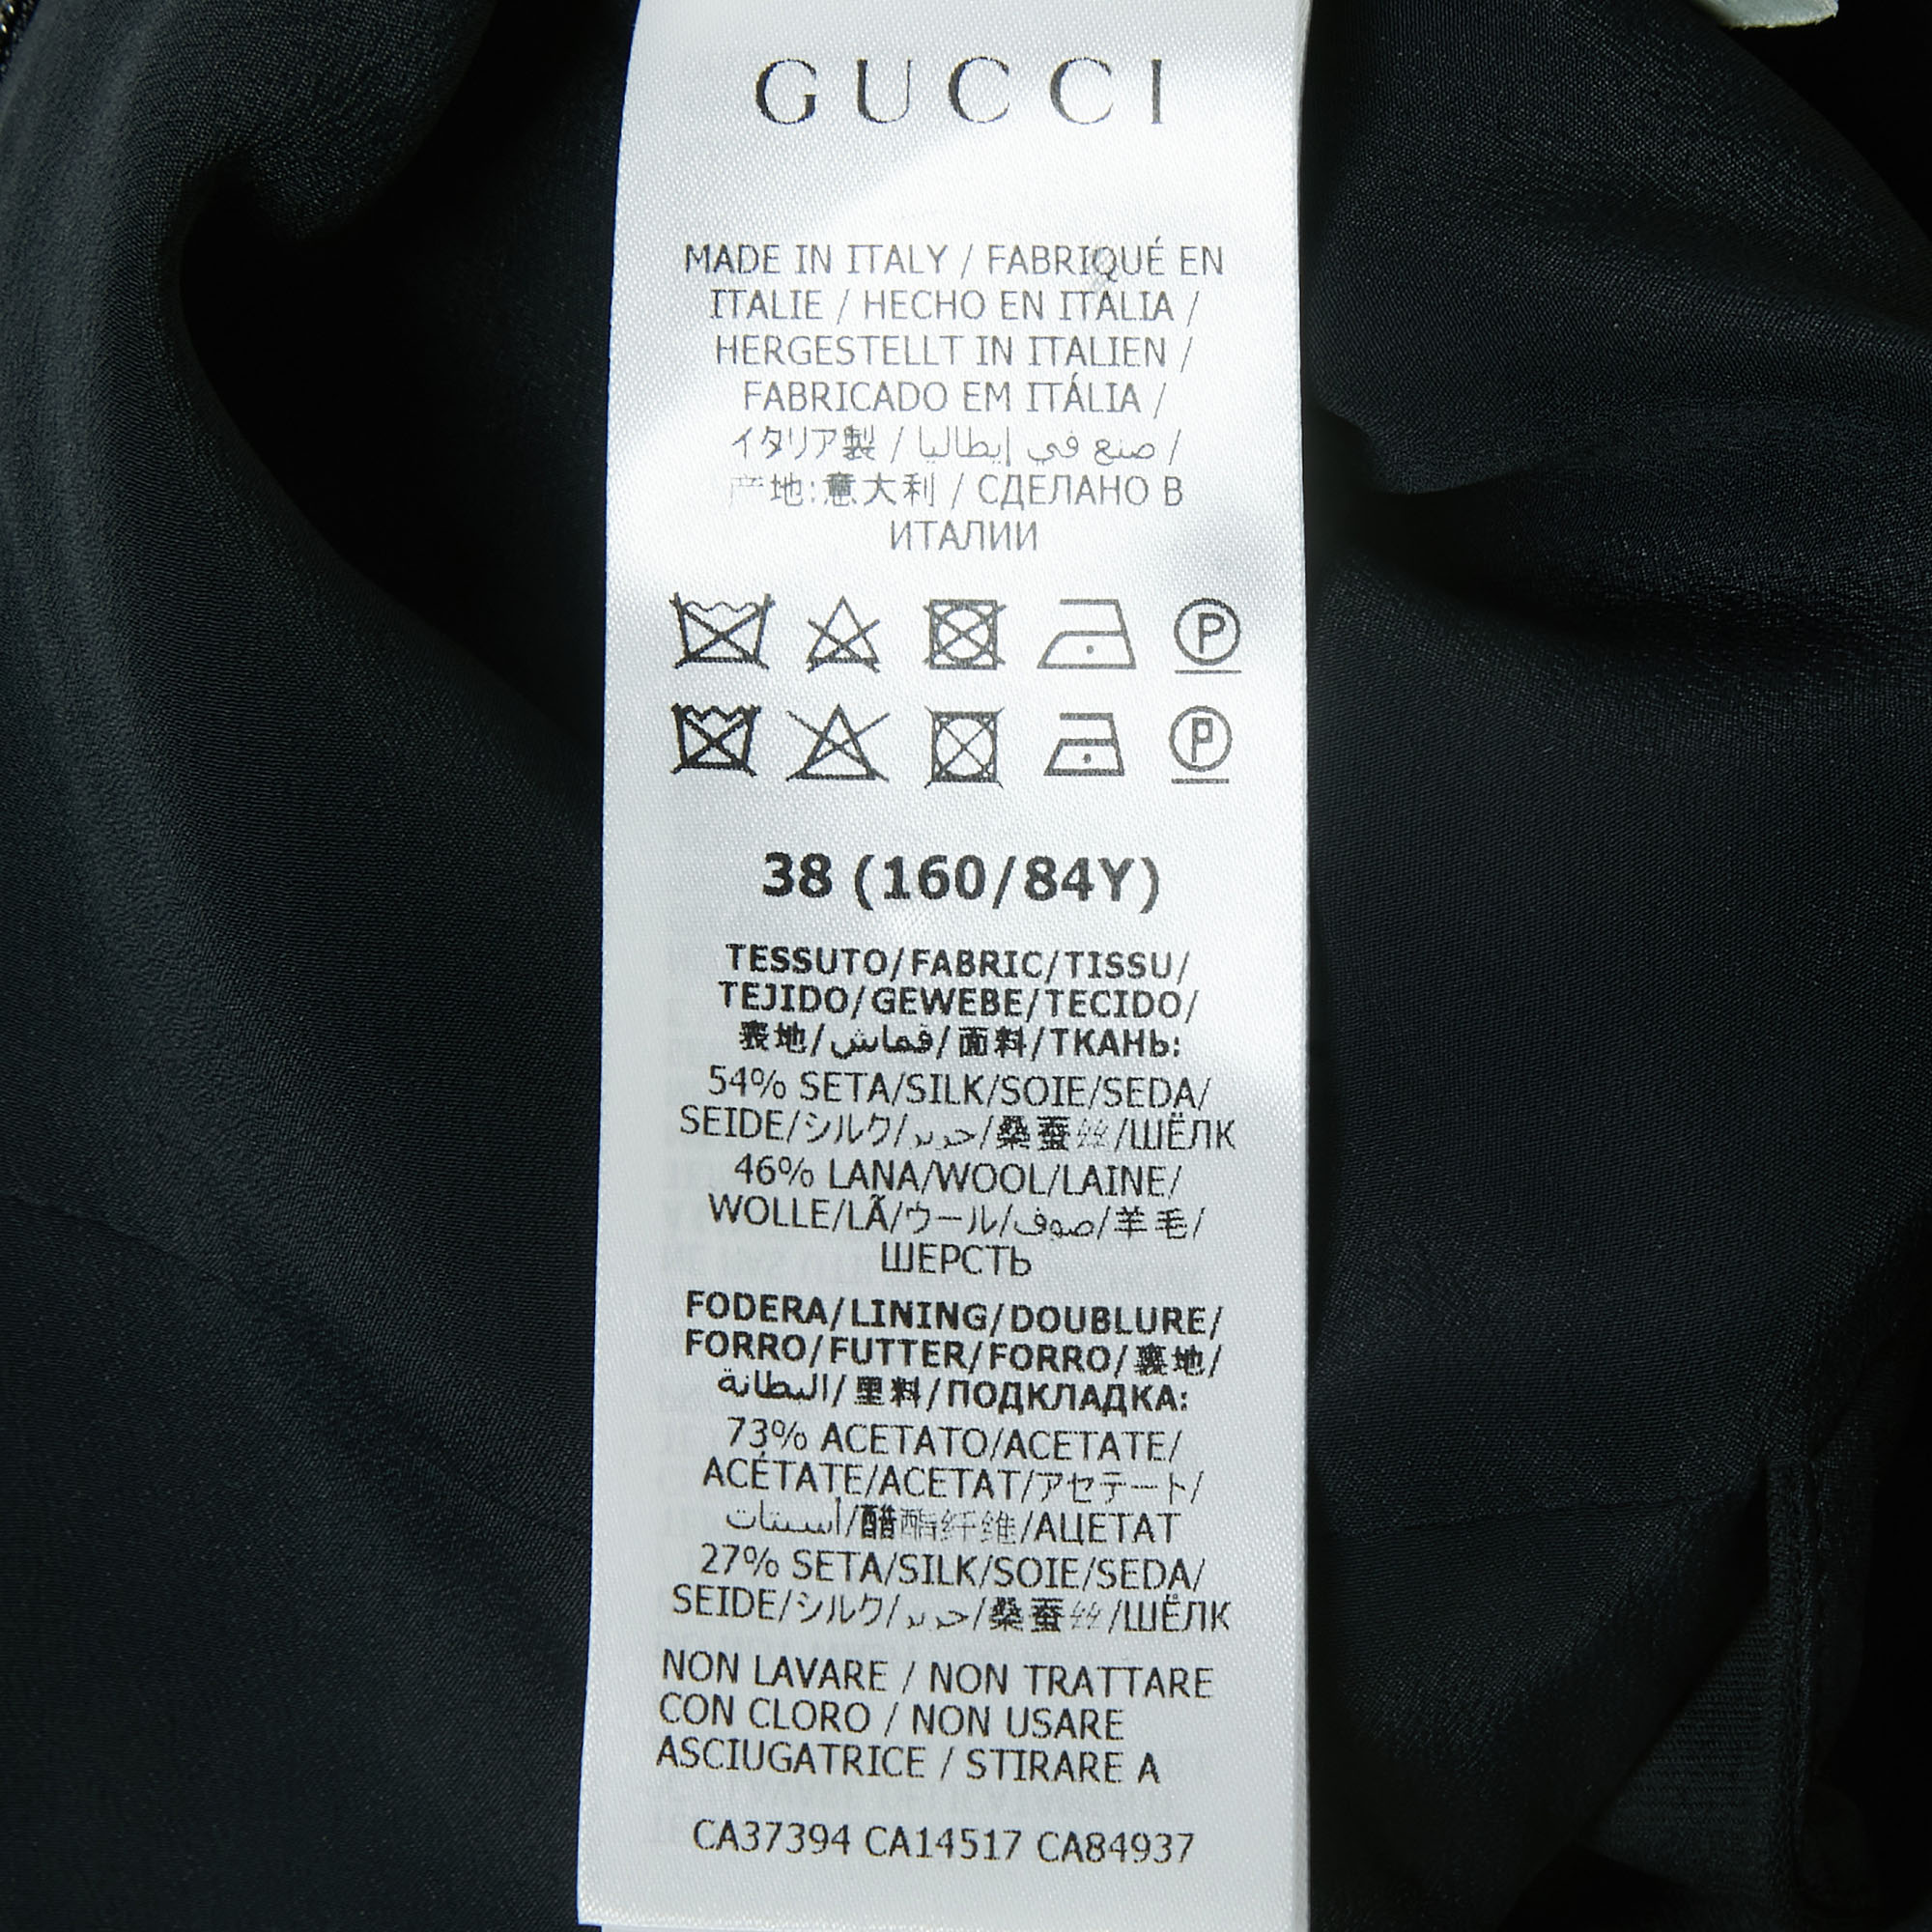 Gucci Black Crepe Criss-Cross Strap Top S